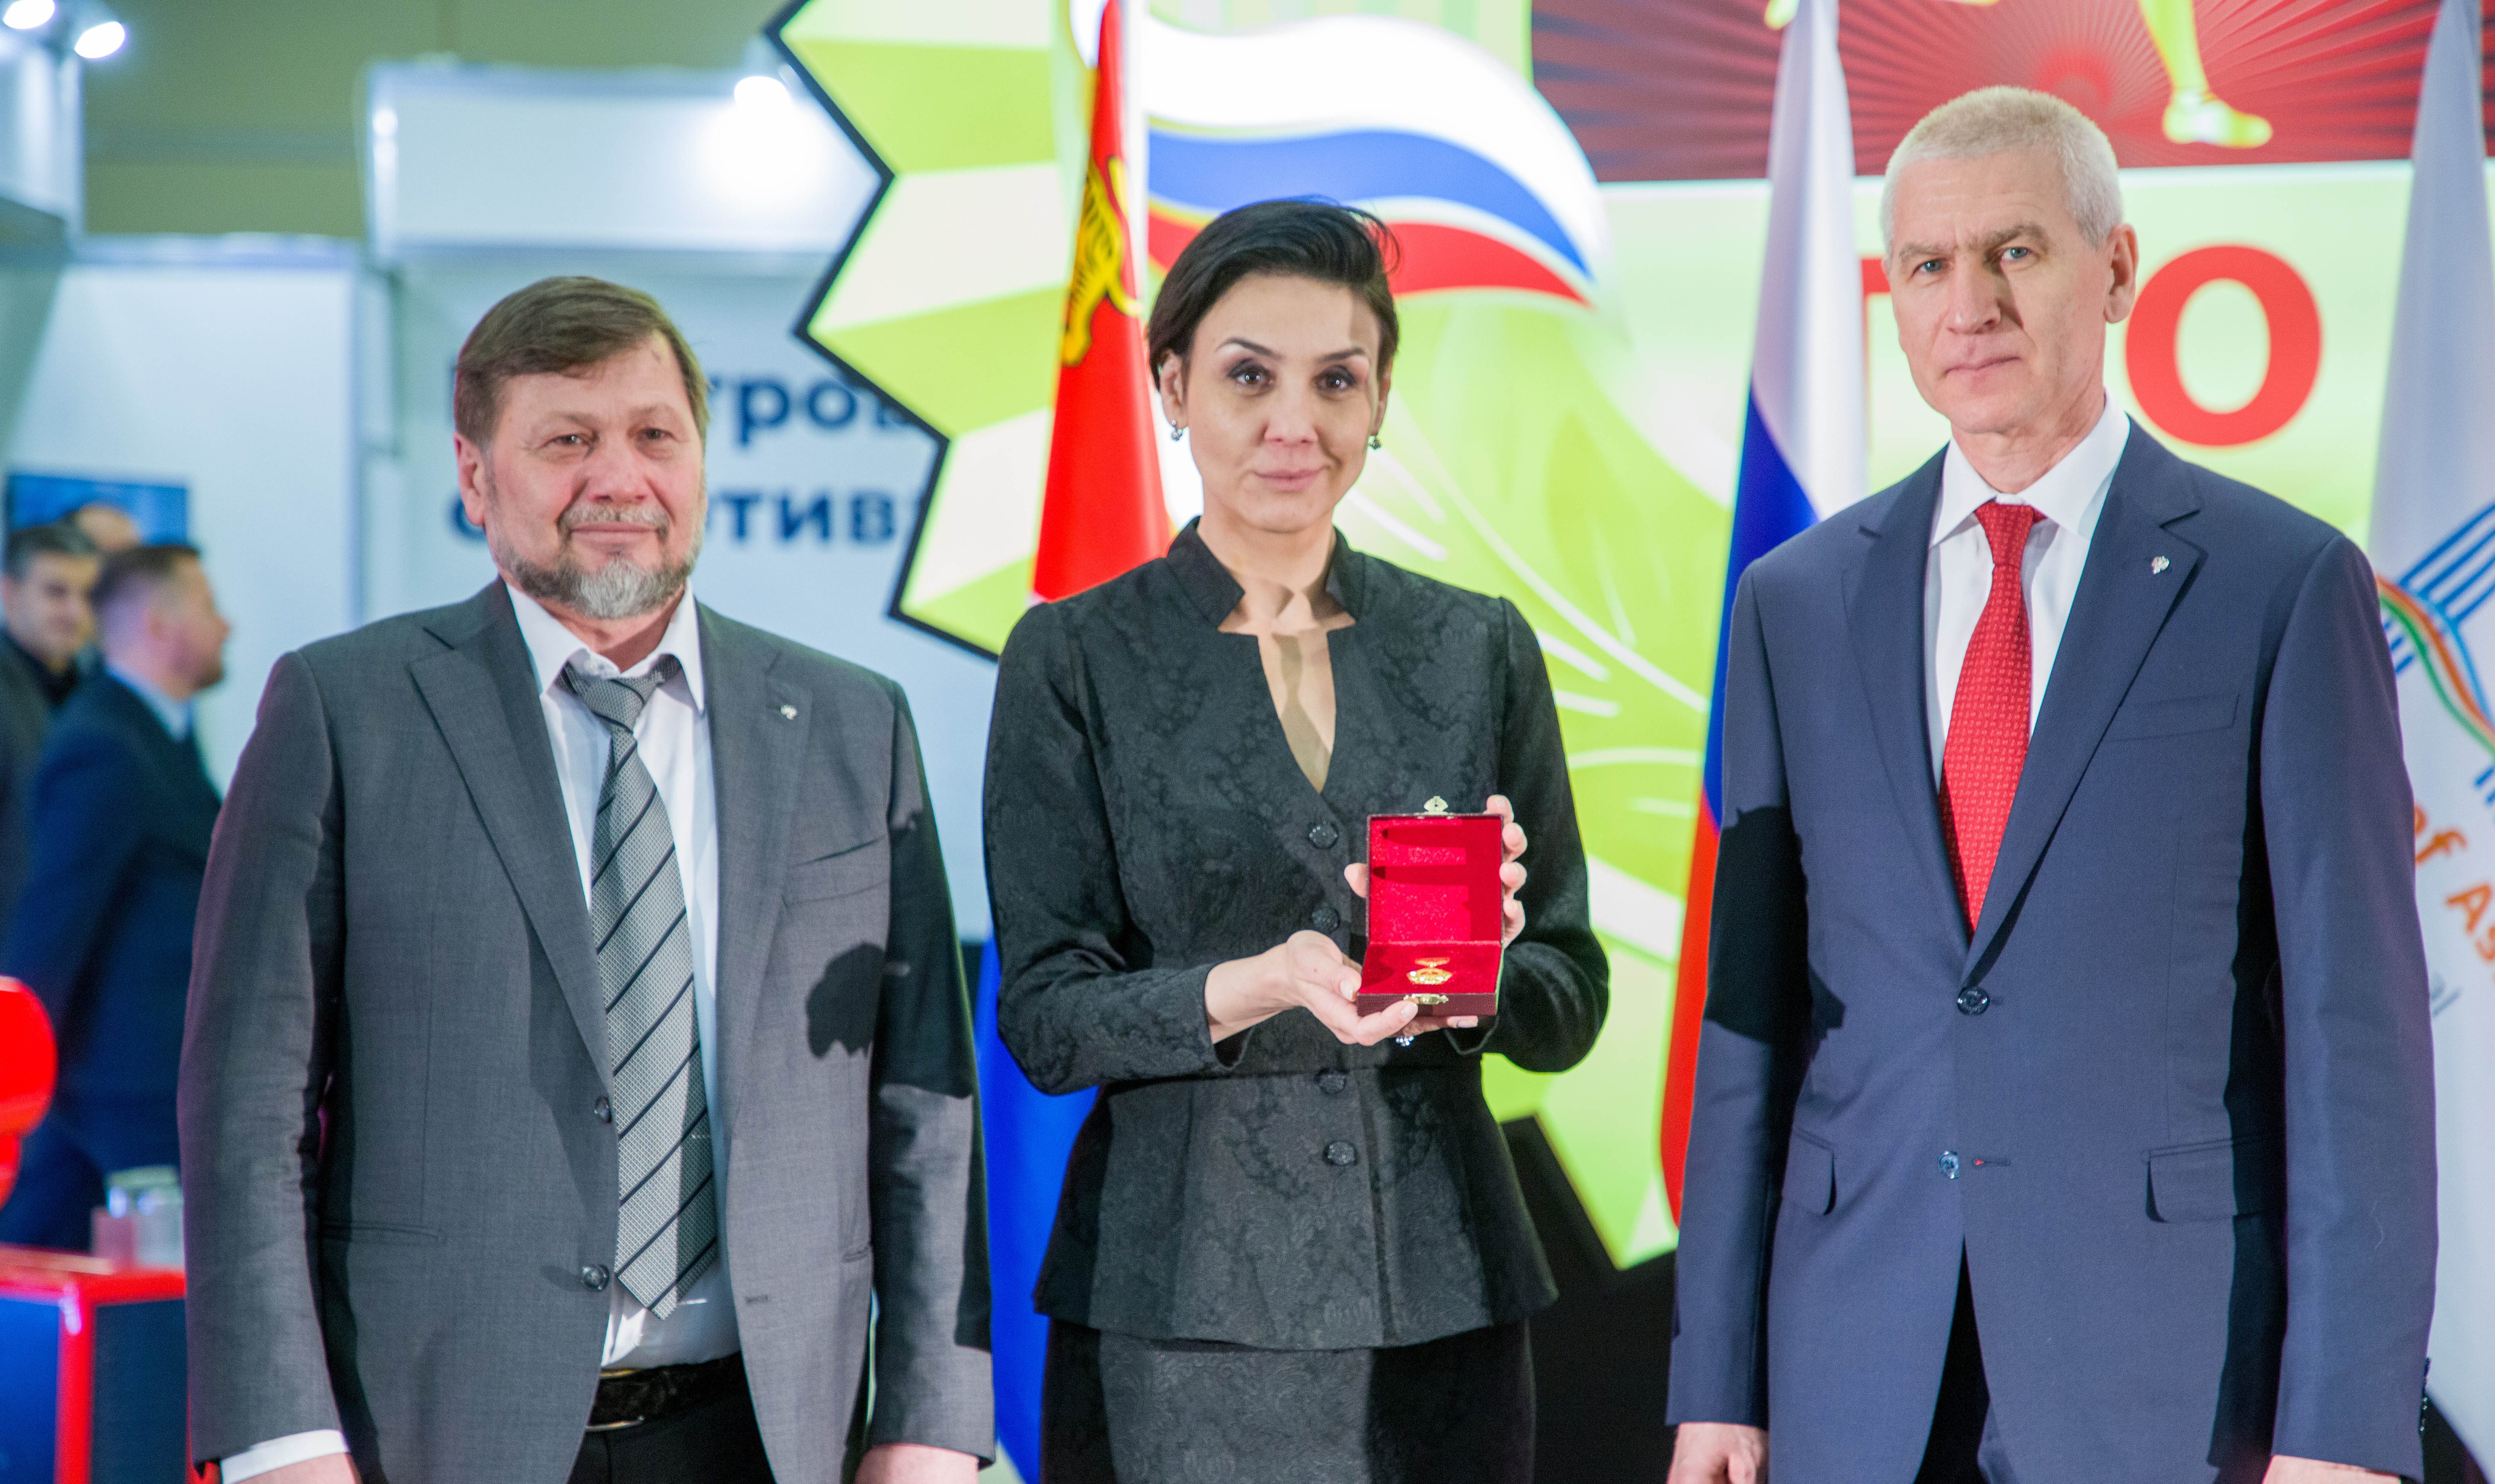 Памятную медаль «90 лет ГТО» передали в фонд Государственного музея спорта России